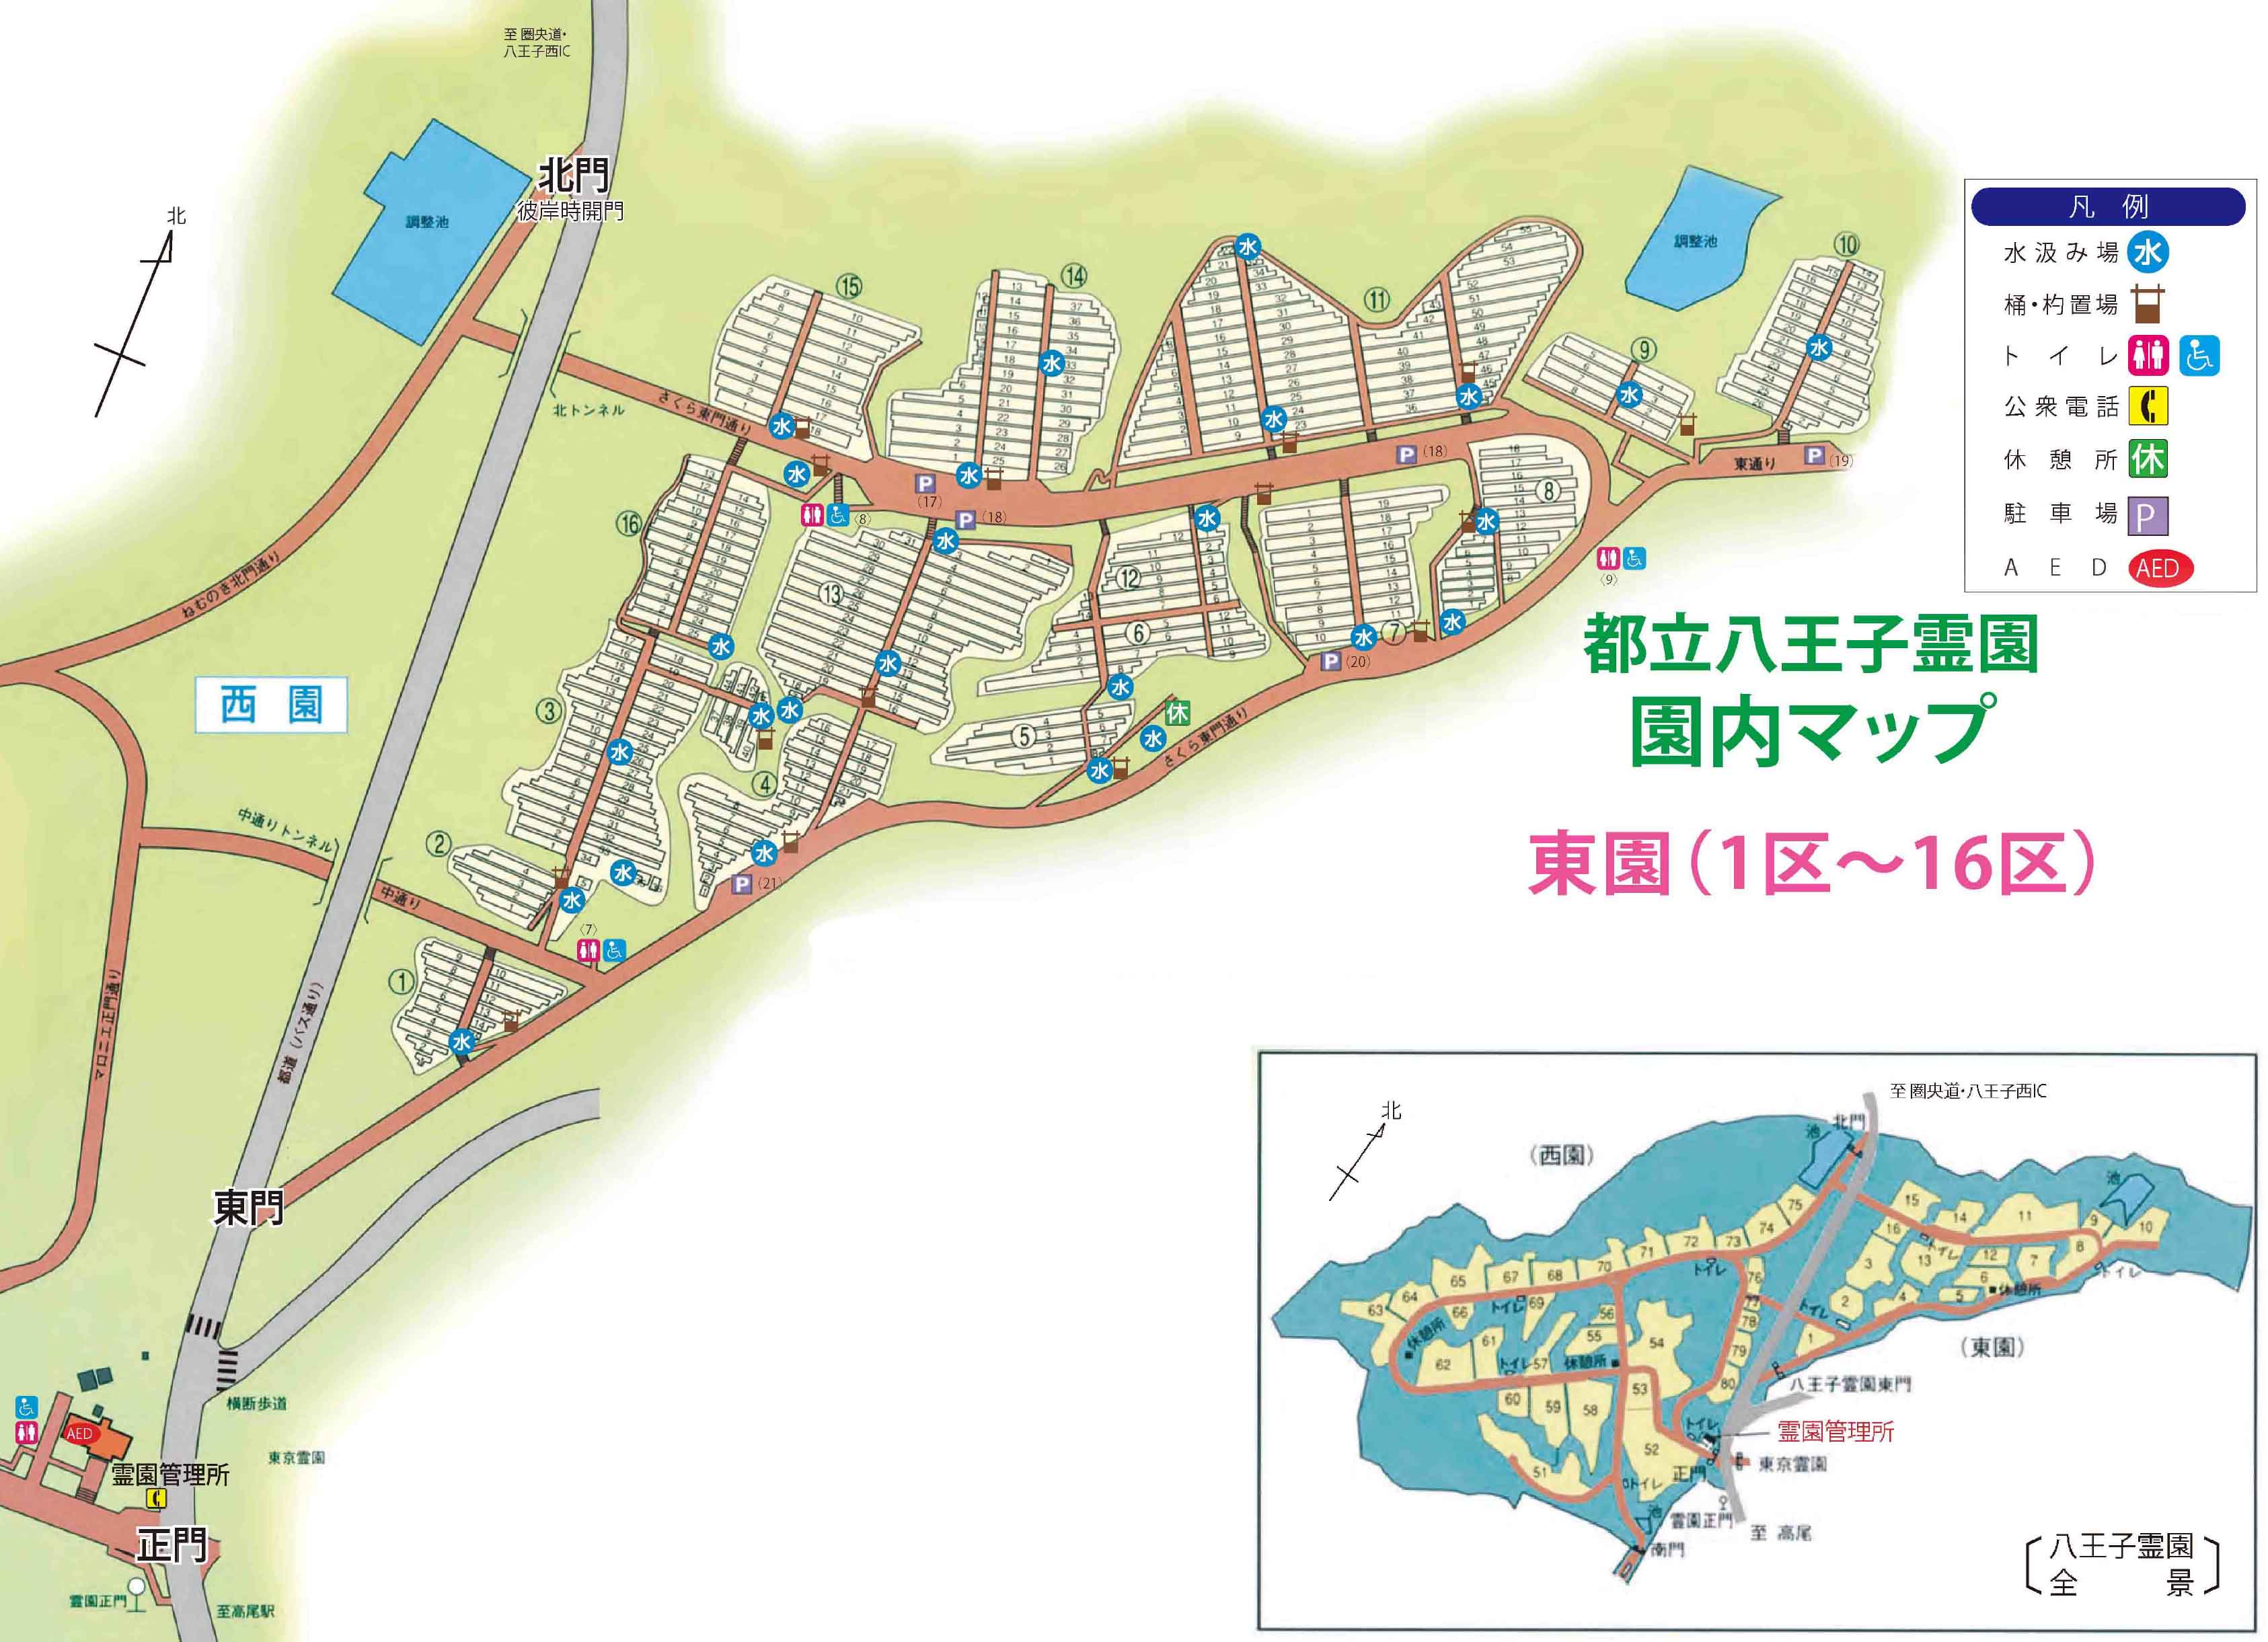 八王子霊園 園内マップ1